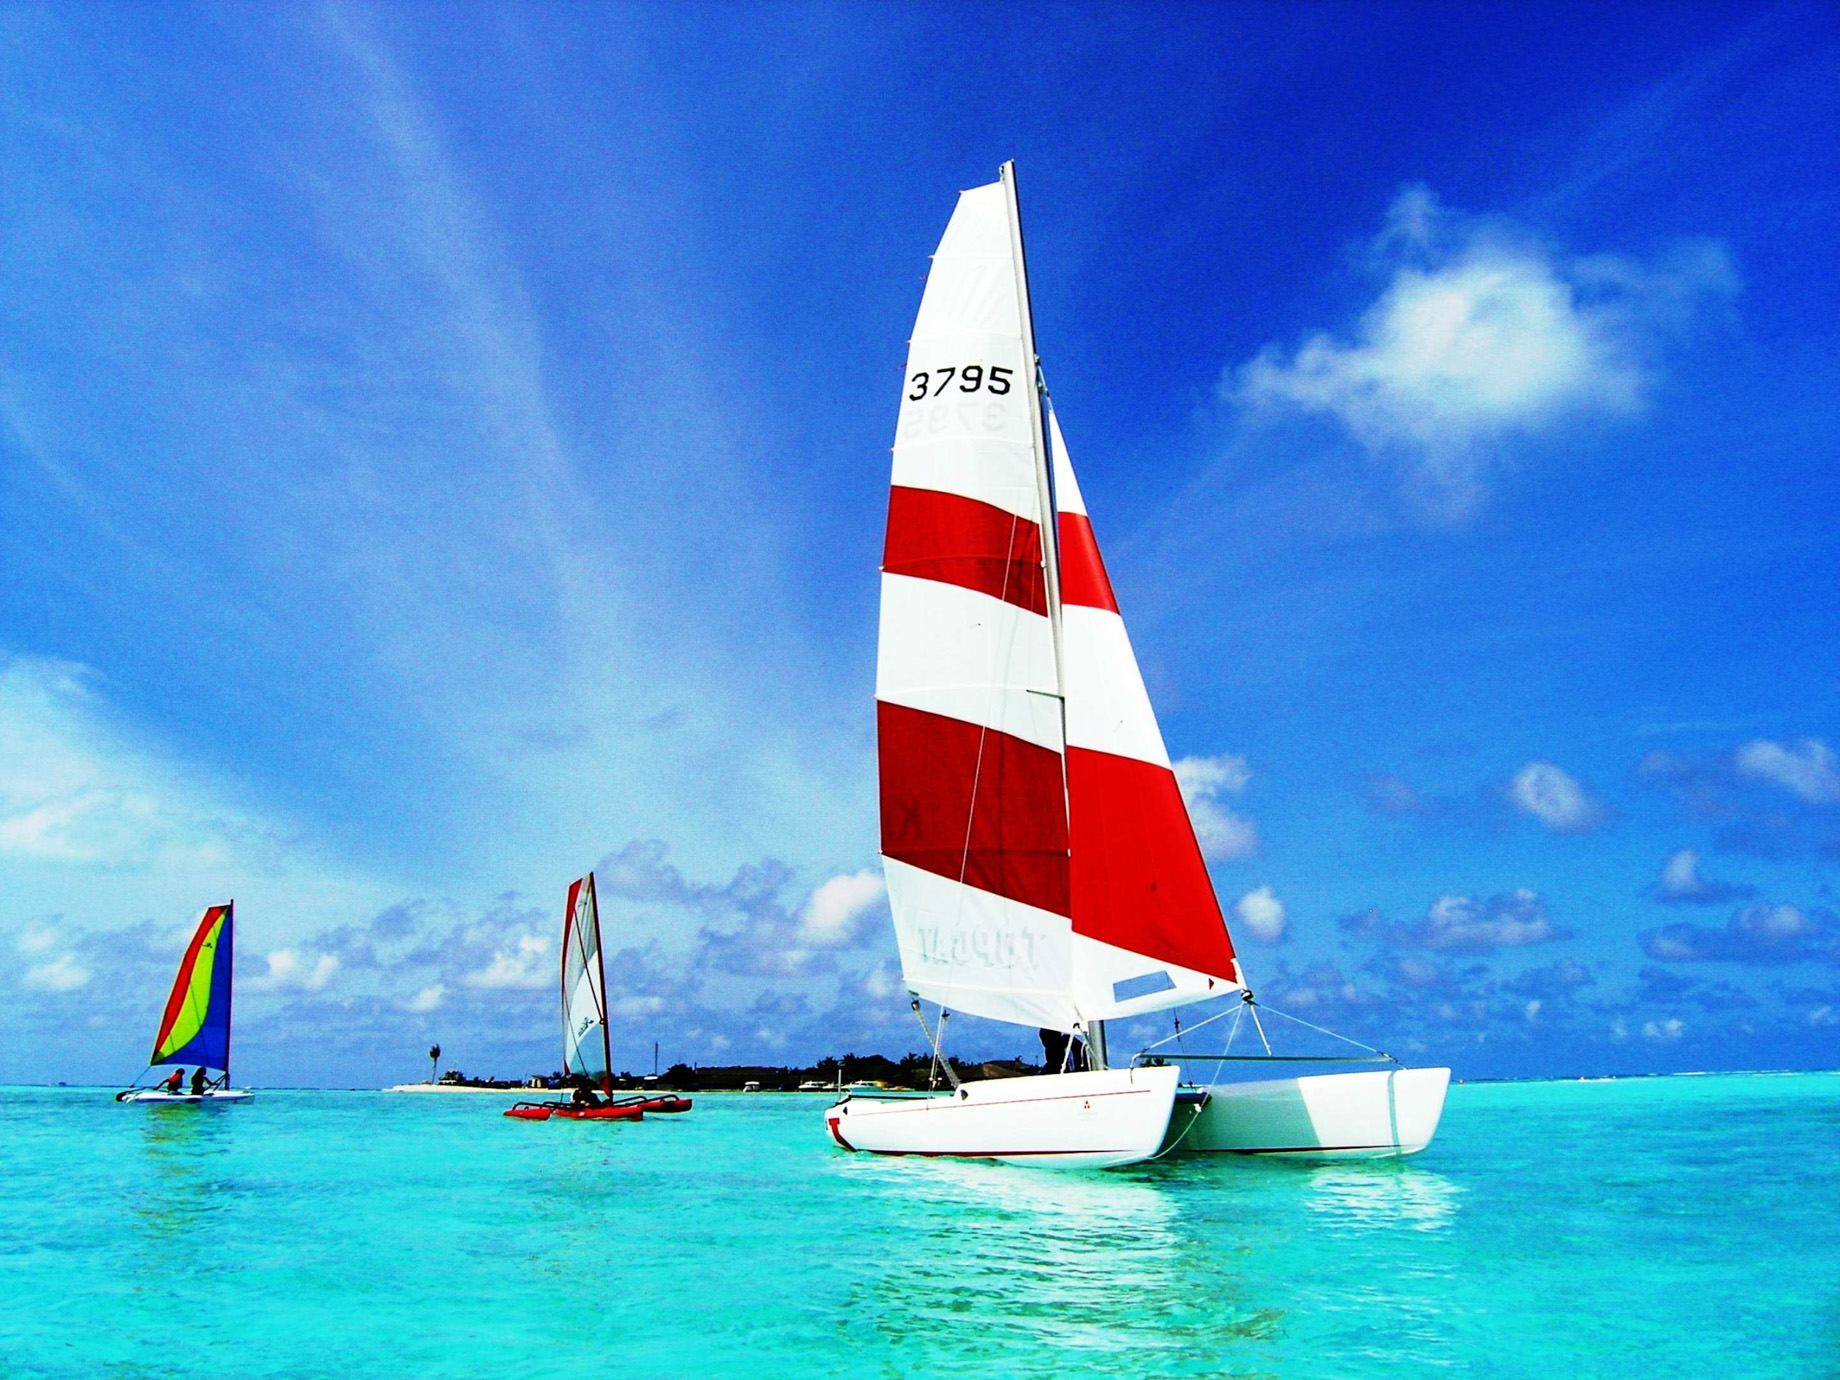 Anantara Veli Maldives Resort – South Male Atoll, Maldives – Sailing